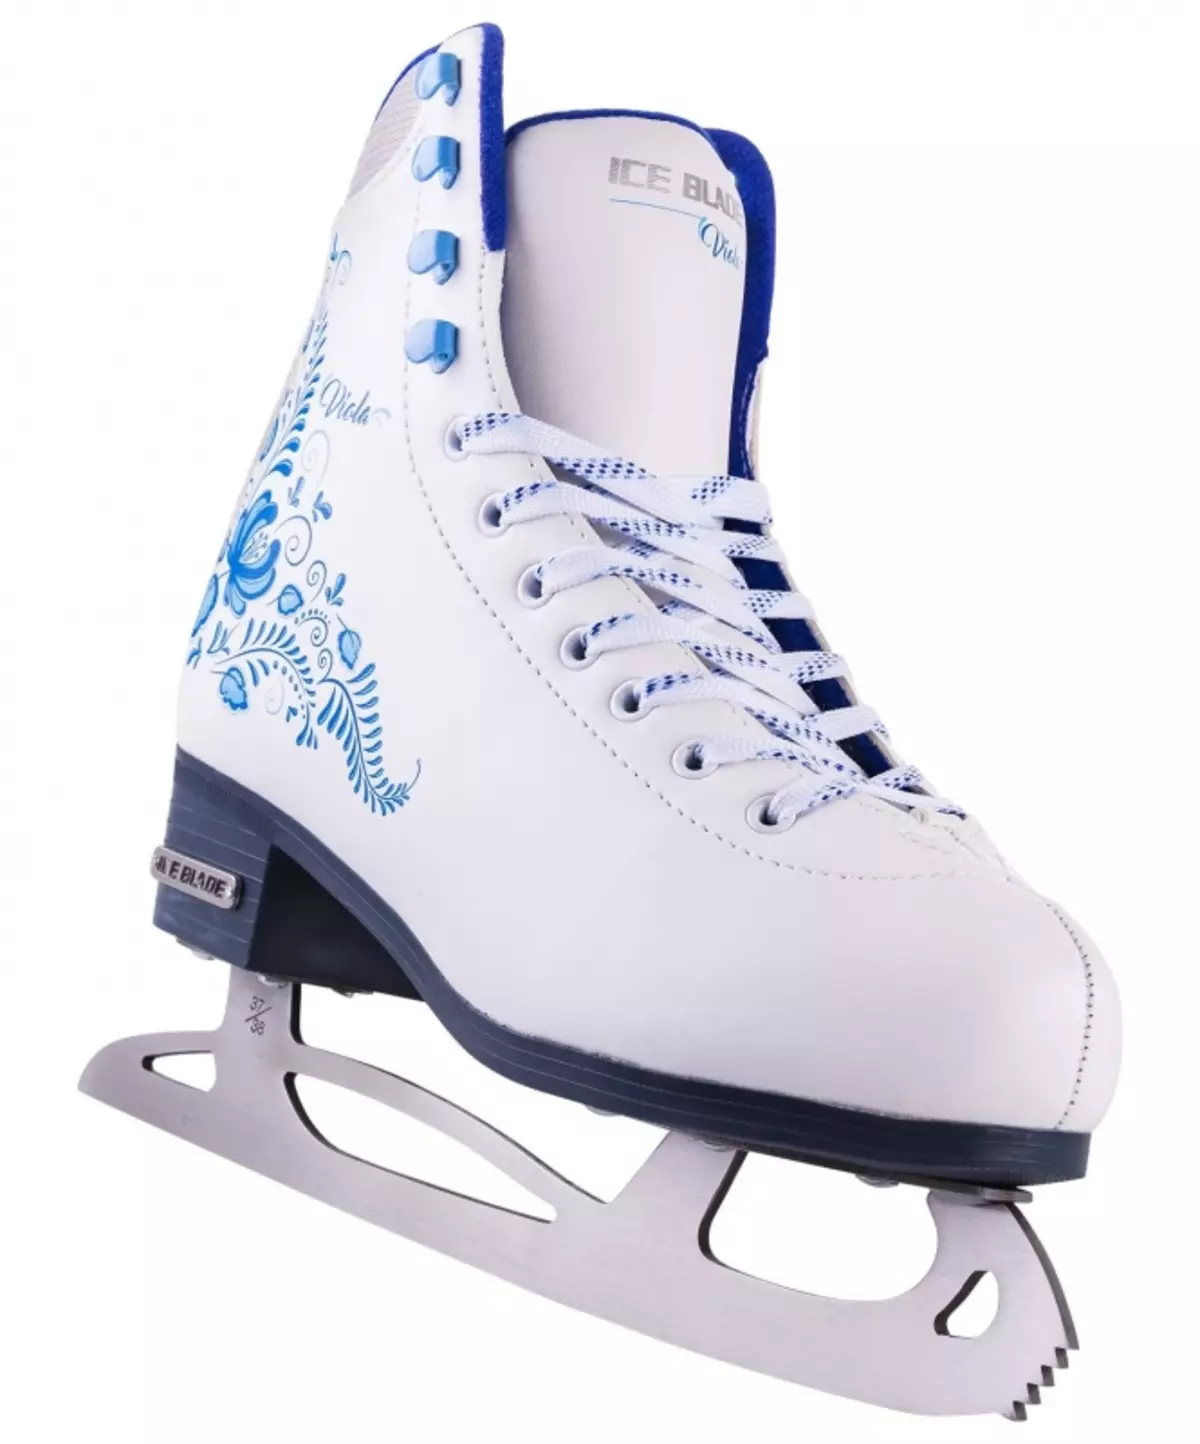 Patins profissionais: Quais são os patins semi-profissionais diferentes do amador? Modelos femininos e masculinos, fabricantes. Seleção de melhores patins 8428_19